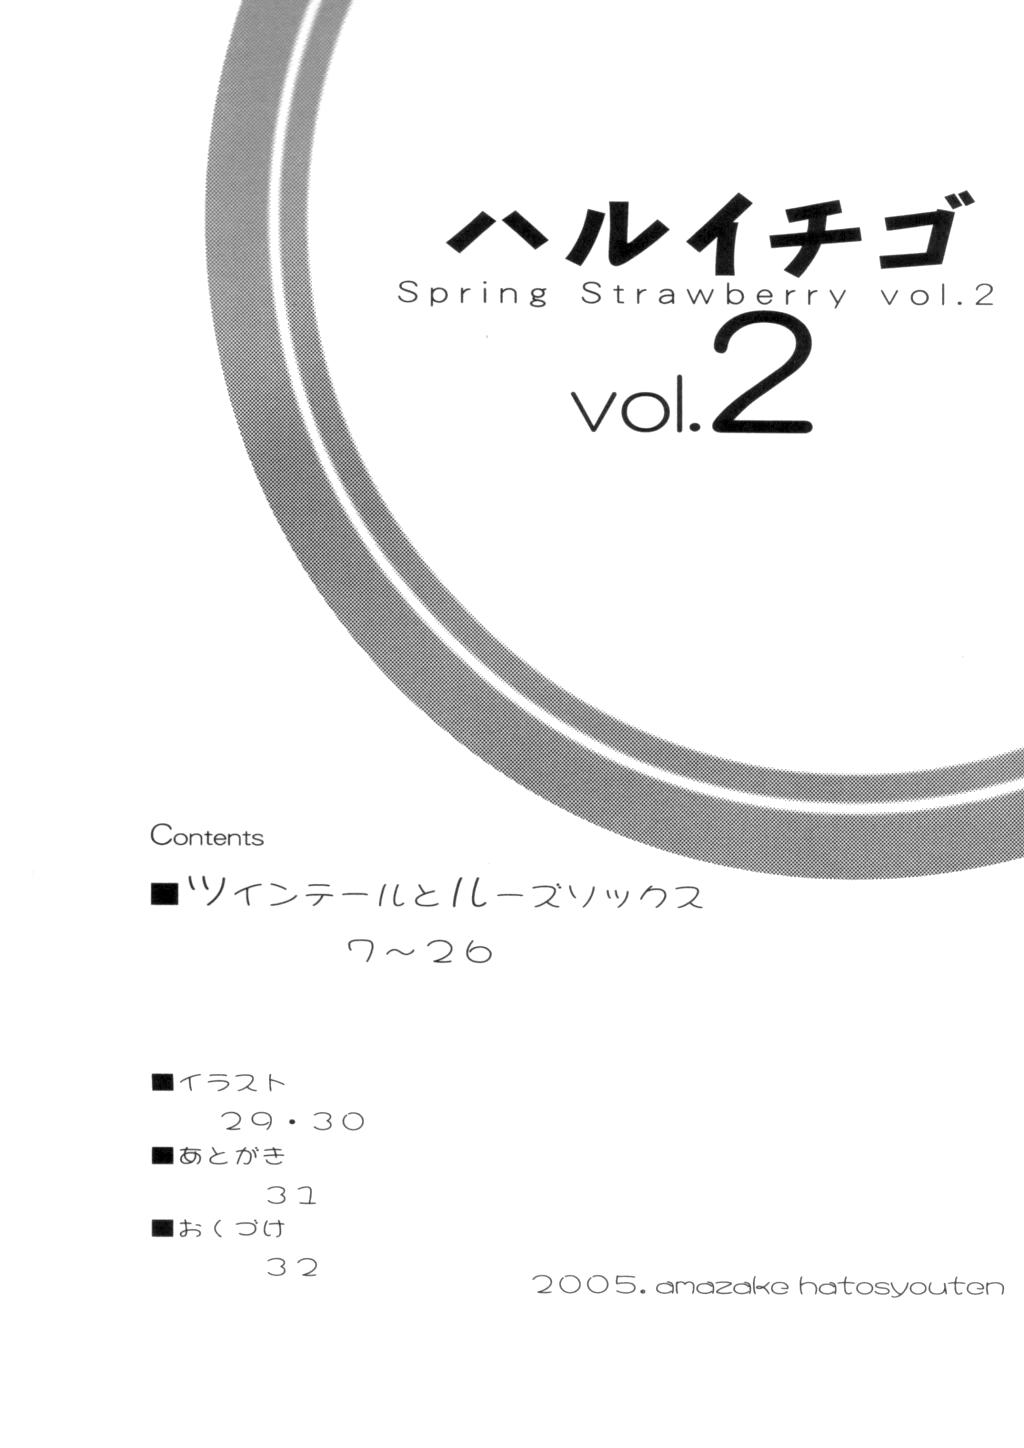 Sexy Girl Sex Haru Ichigo Vol. 2 - Spring Strawberry Vol. 2 - Ichigo 100 Big Penis - Page 3